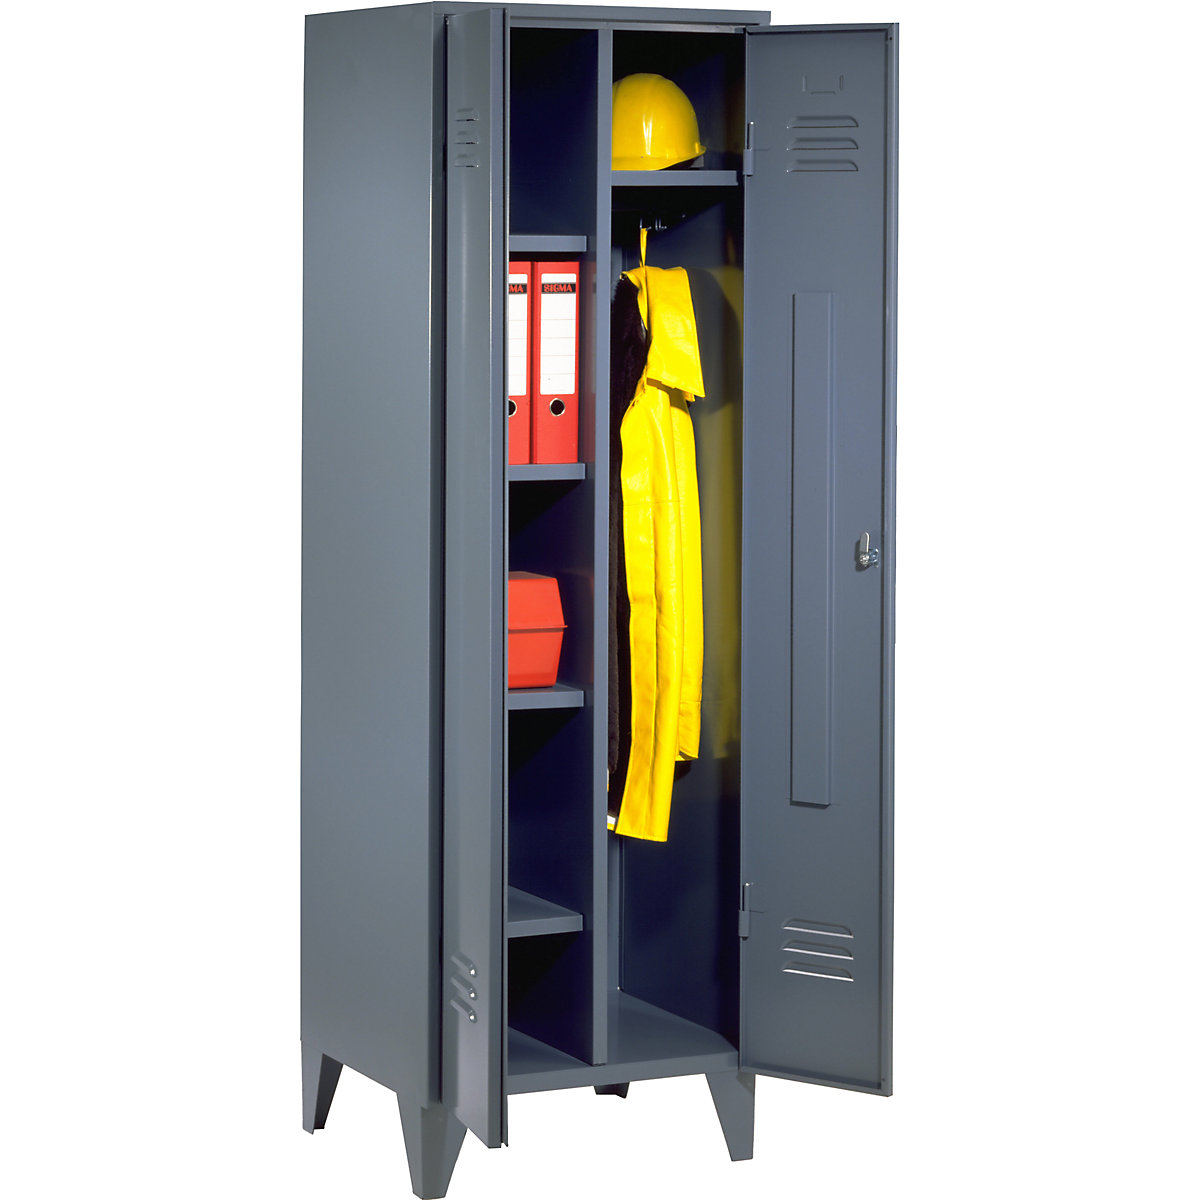 Armadio in acciaio – Wolf, armadio portamateriali con piedini, grigio-azzurro RAL 7031-9